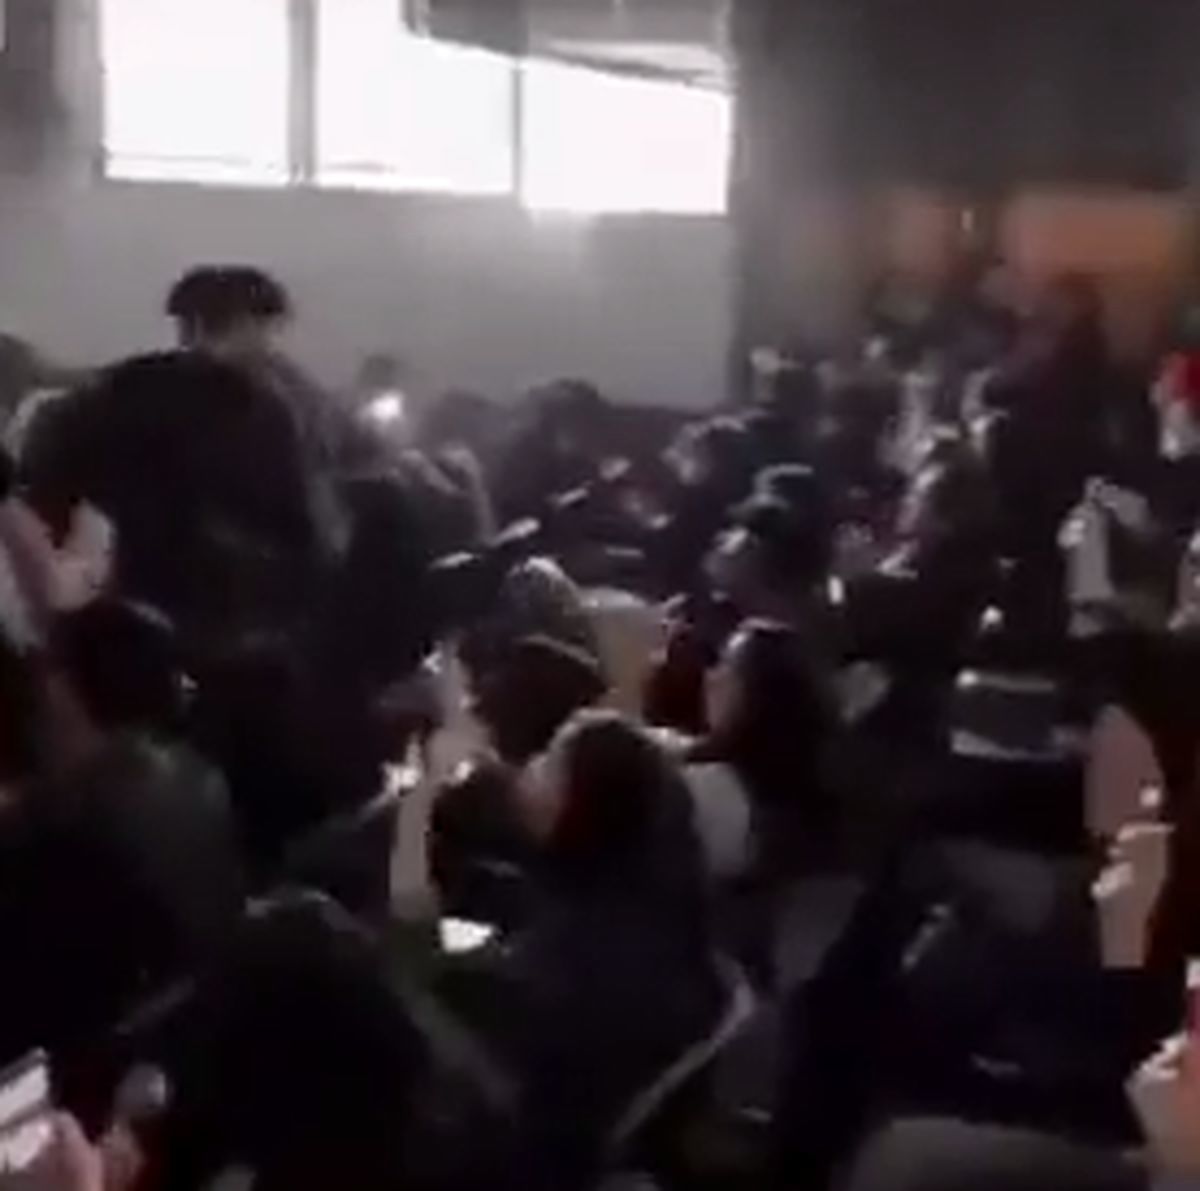 کلیپ جنجالی رقص مختلط دانشجویان که باعث اخراج مدیران یک دانشگاه شد